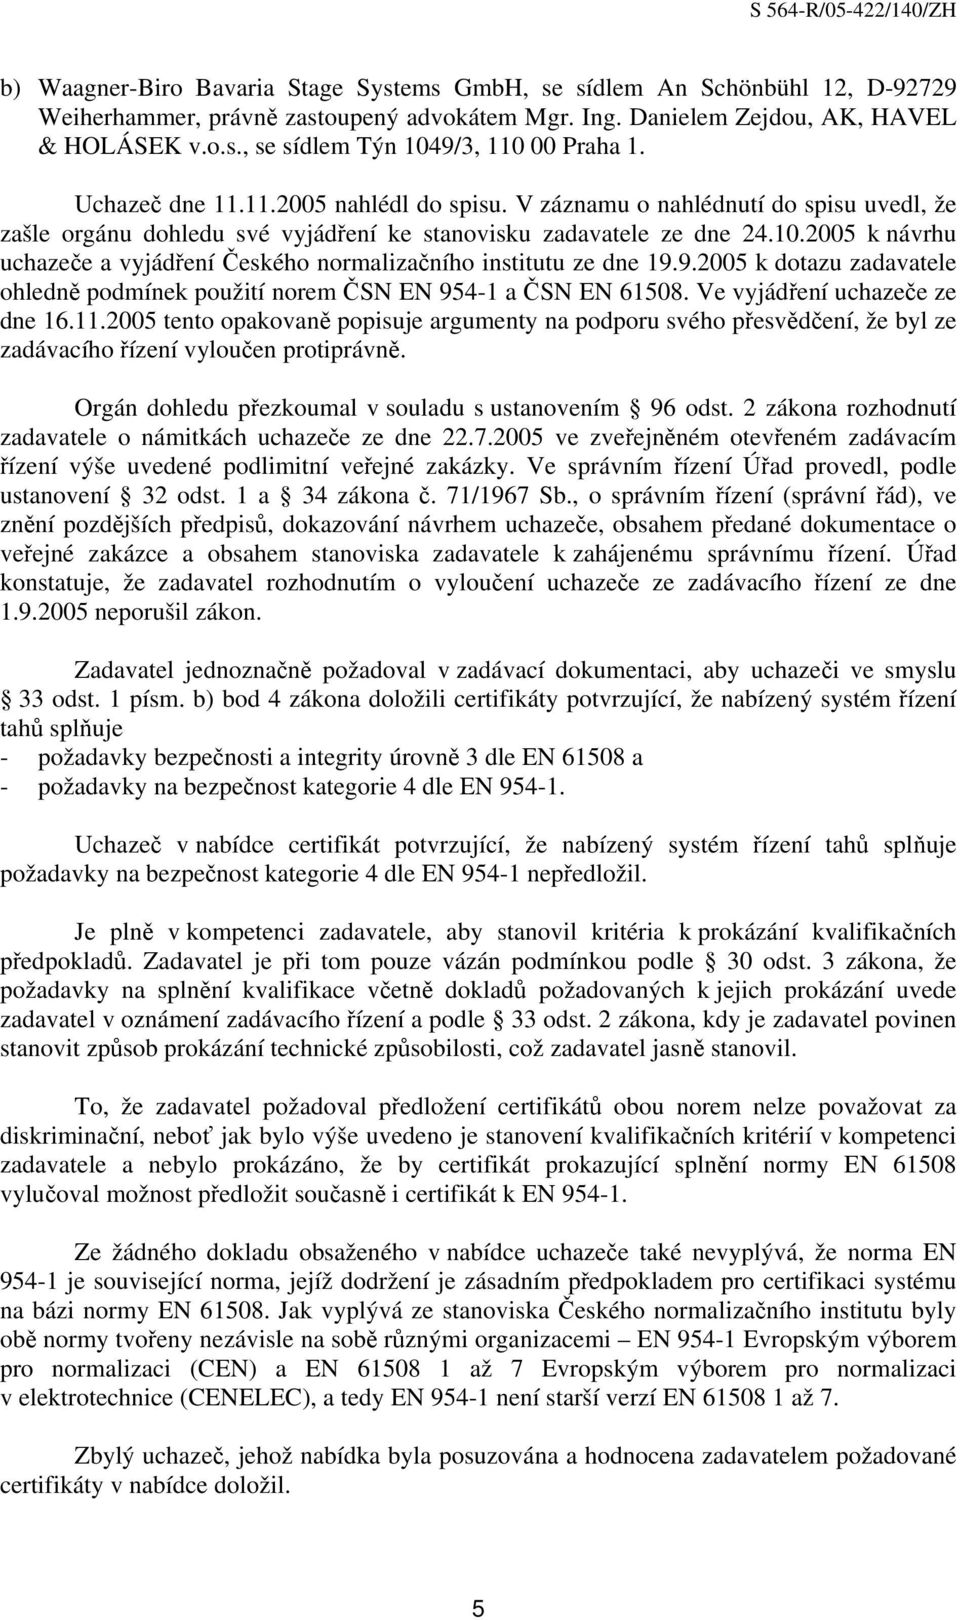 2005 k návrhu uchazeče a vyjádření Českého normalizačního institutu ze dne 19.9.2005 k dotazu zadavatele ohledně podmínek použití norem ČSN EN 954-1 a ČSN EN 61508. Ve vyjádření uchazeče ze dne 16.11.